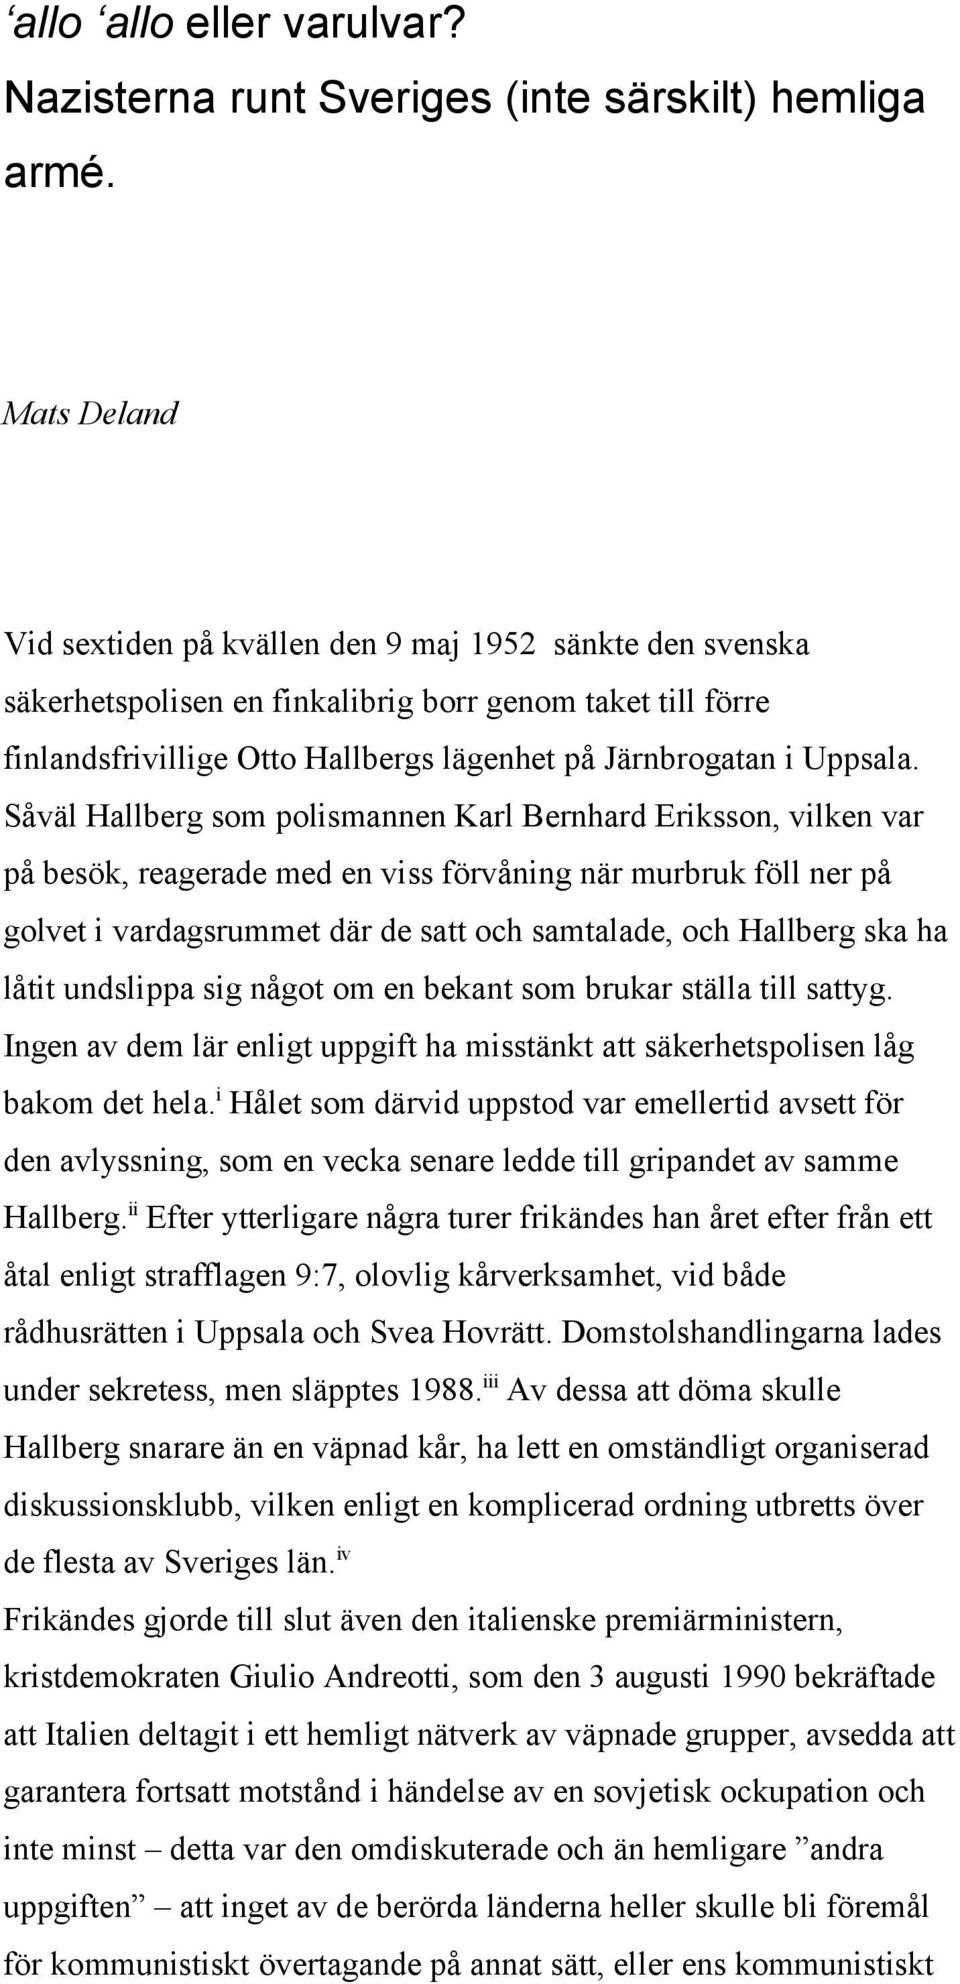 Såväl Hallberg som polismannen Karl Bernhard Eriksson, vilken var på besök, reagerade med en viss förvåning när murbruk föll ner på golvet i vardagsrummet där de satt och samtalade, och Hallberg ska